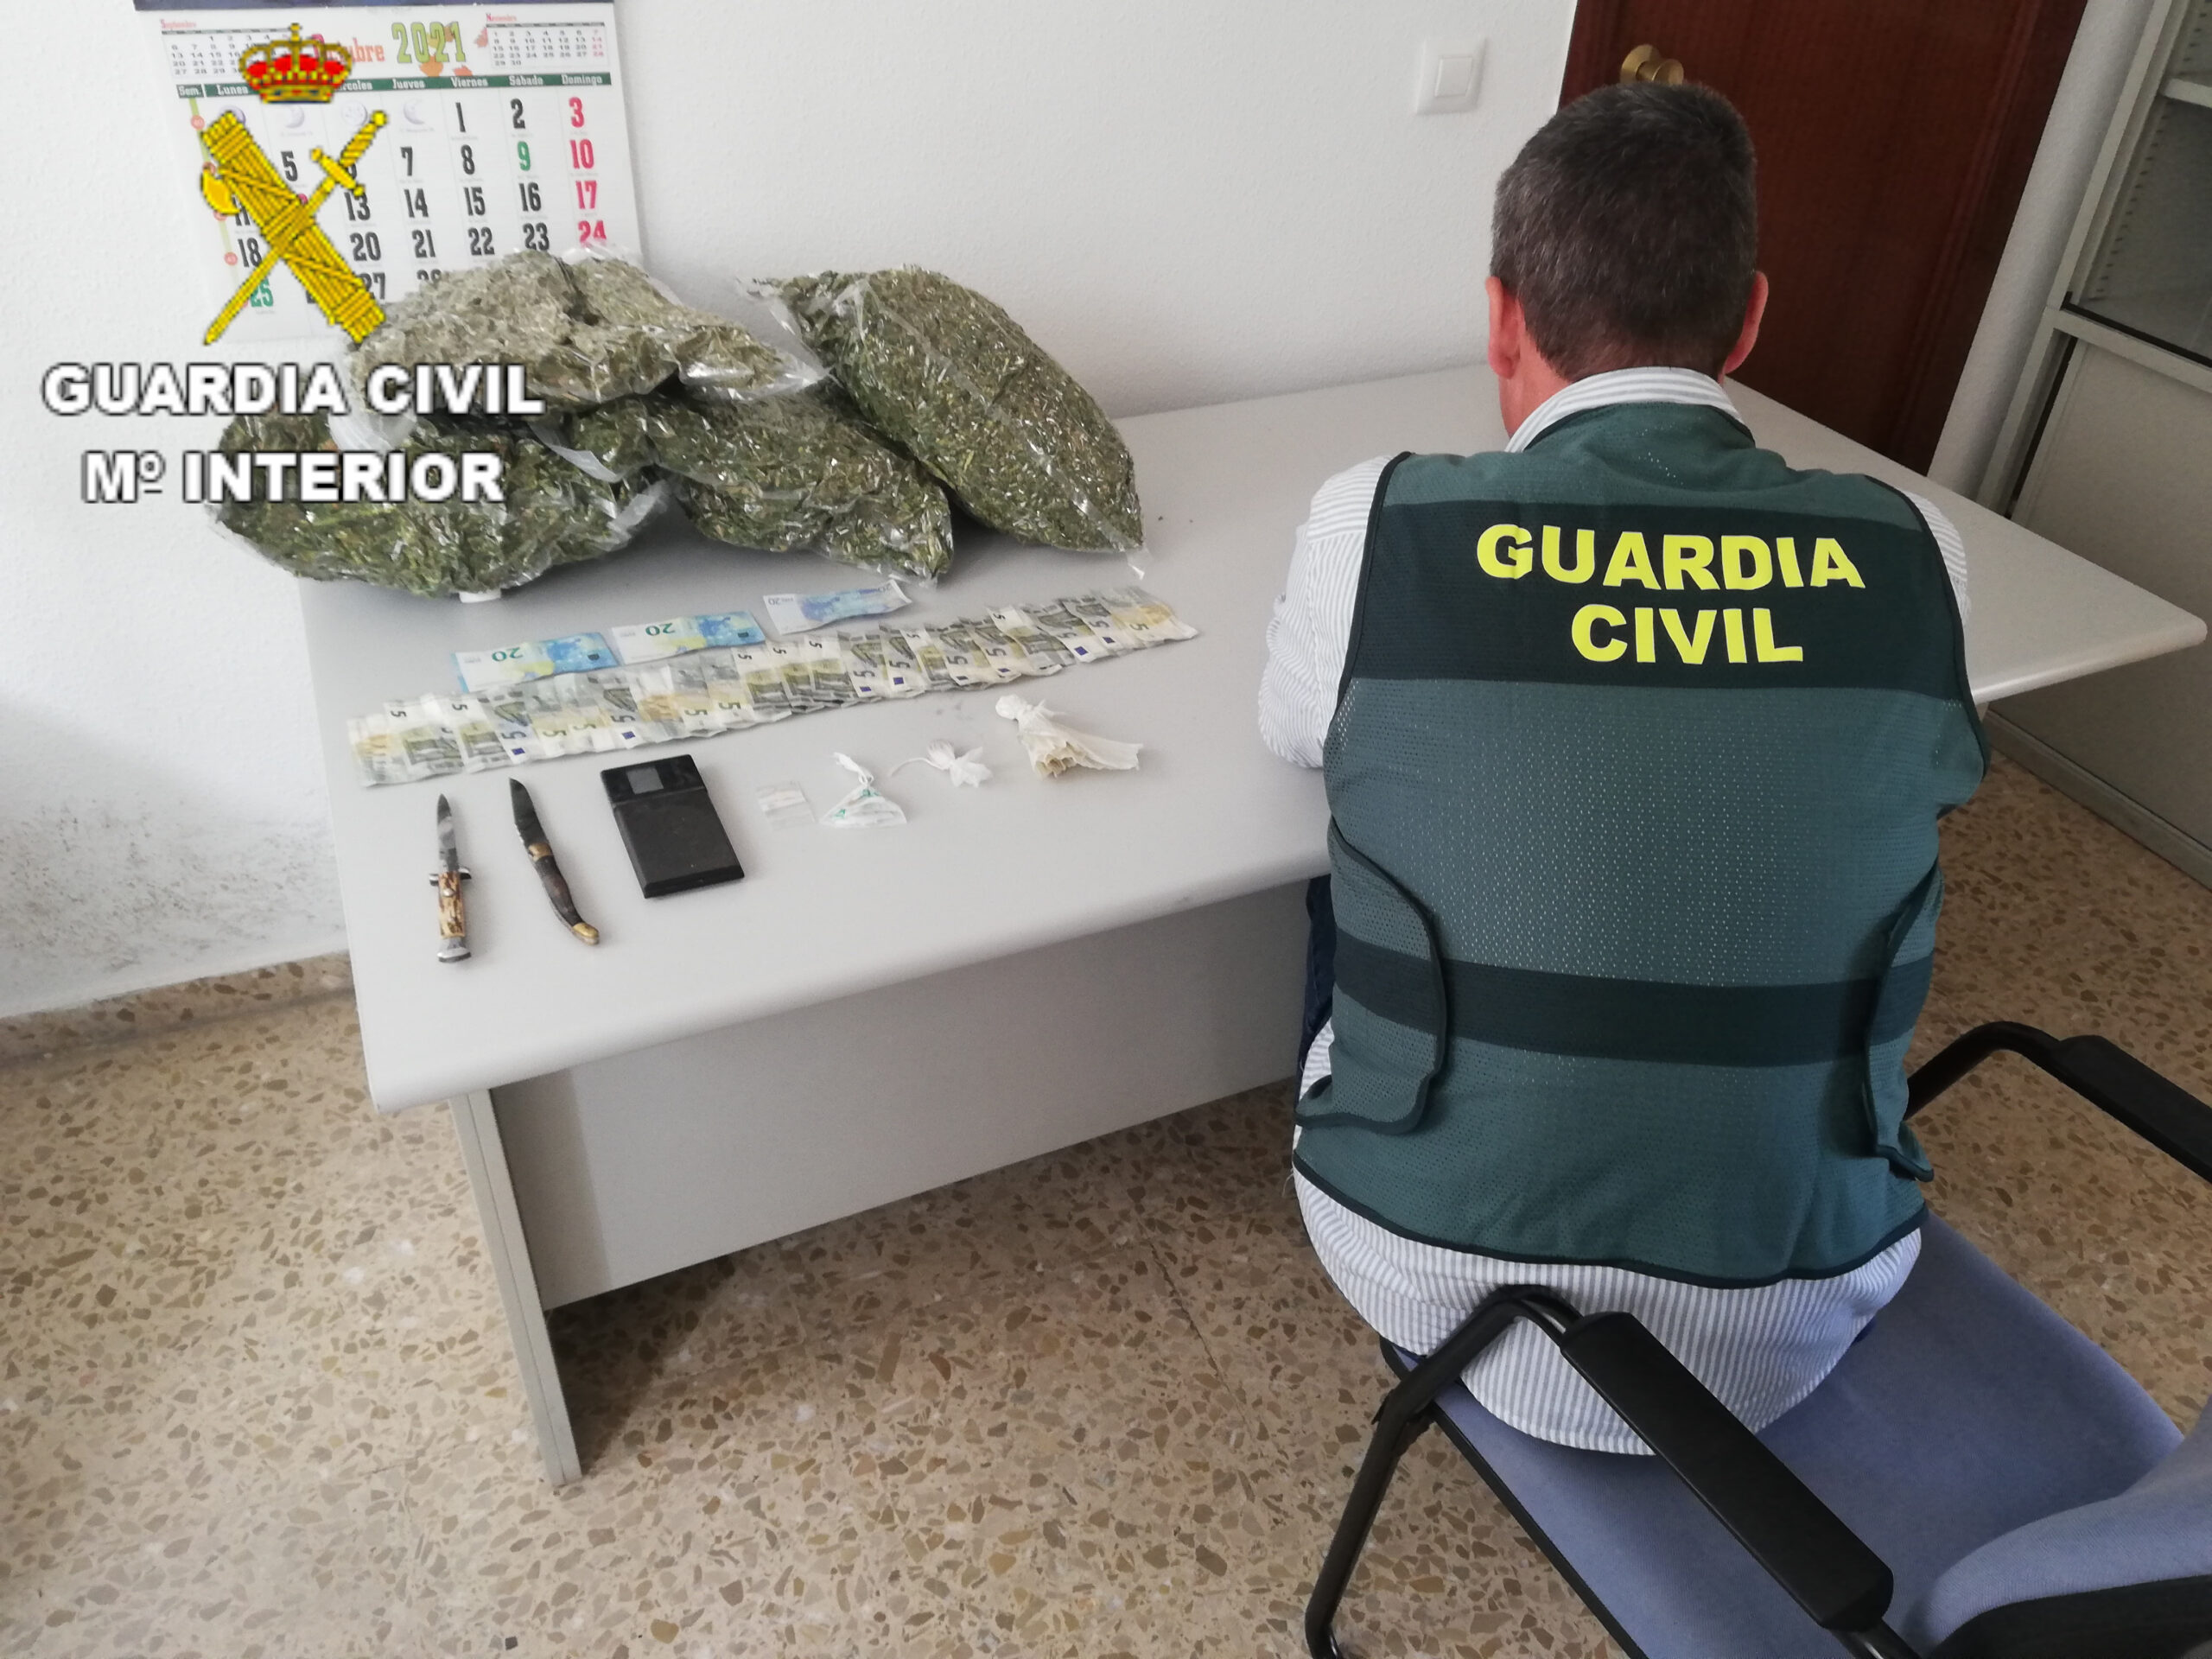 La Guardia Civil detiene a una decena de personas por tráfico de drogas en Carlet y Alfarrasí El Periódico de Ontinyent - Noticias en Ontinyent